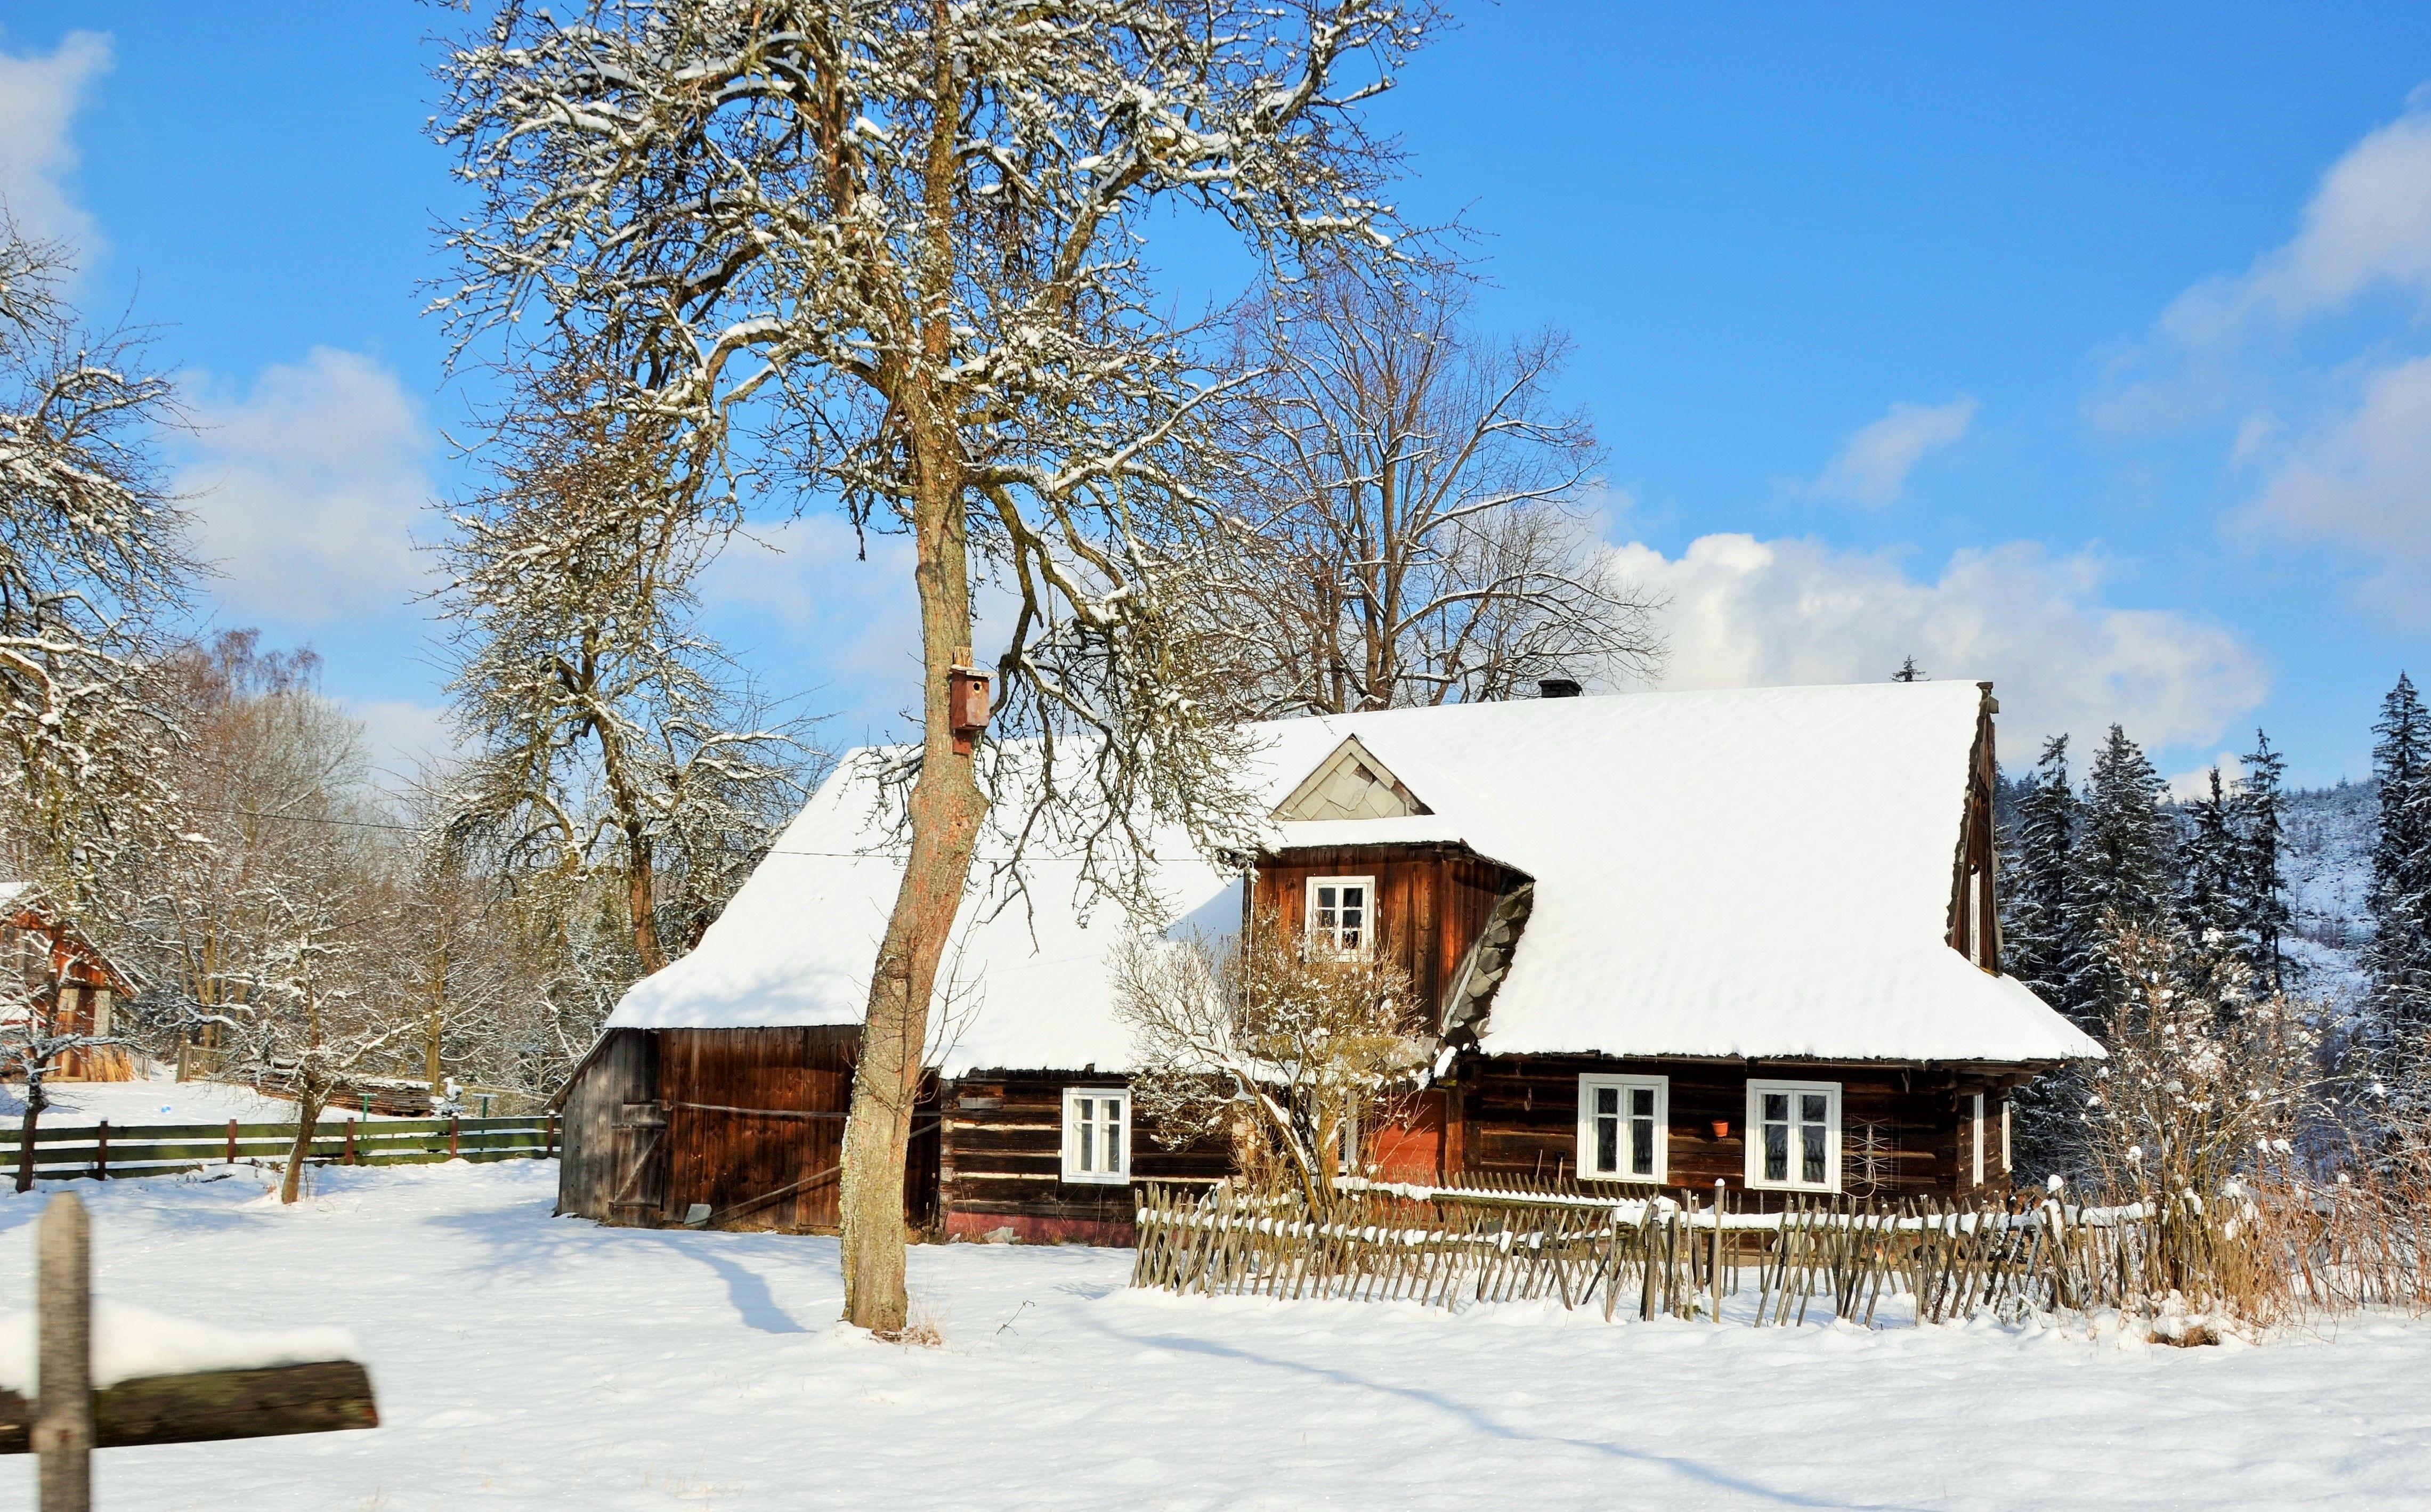 Stara drewniana chałupa góralska w zimowej, śnieżnej scenerii. Przed budynkiem fragment
drewnianego ogrodzenia oraz drzewo z zawieszoną budką dla ptaków.